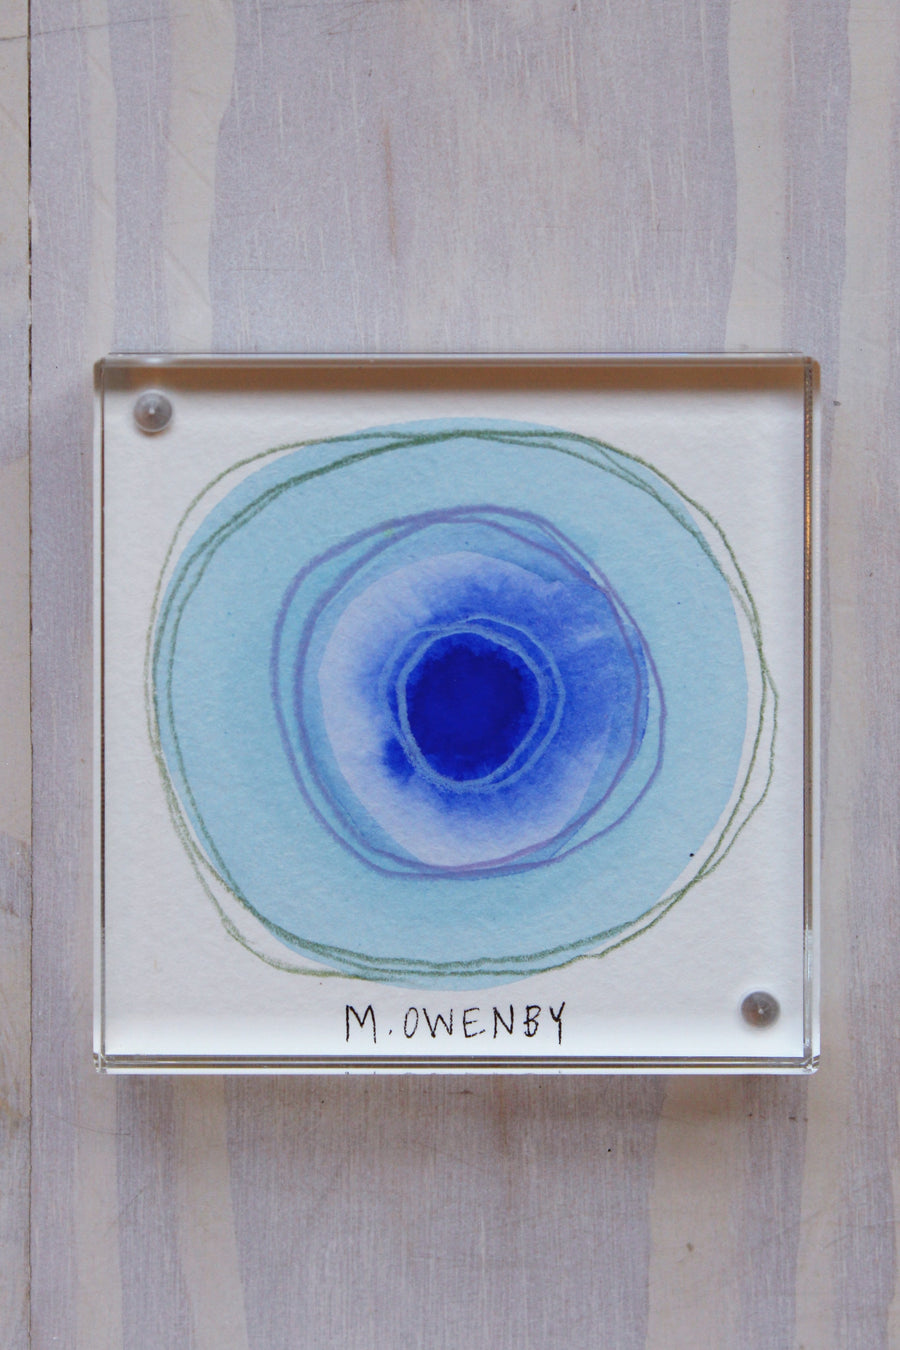 God’s Eye - Ocular 38 - Michelle Owenby Design